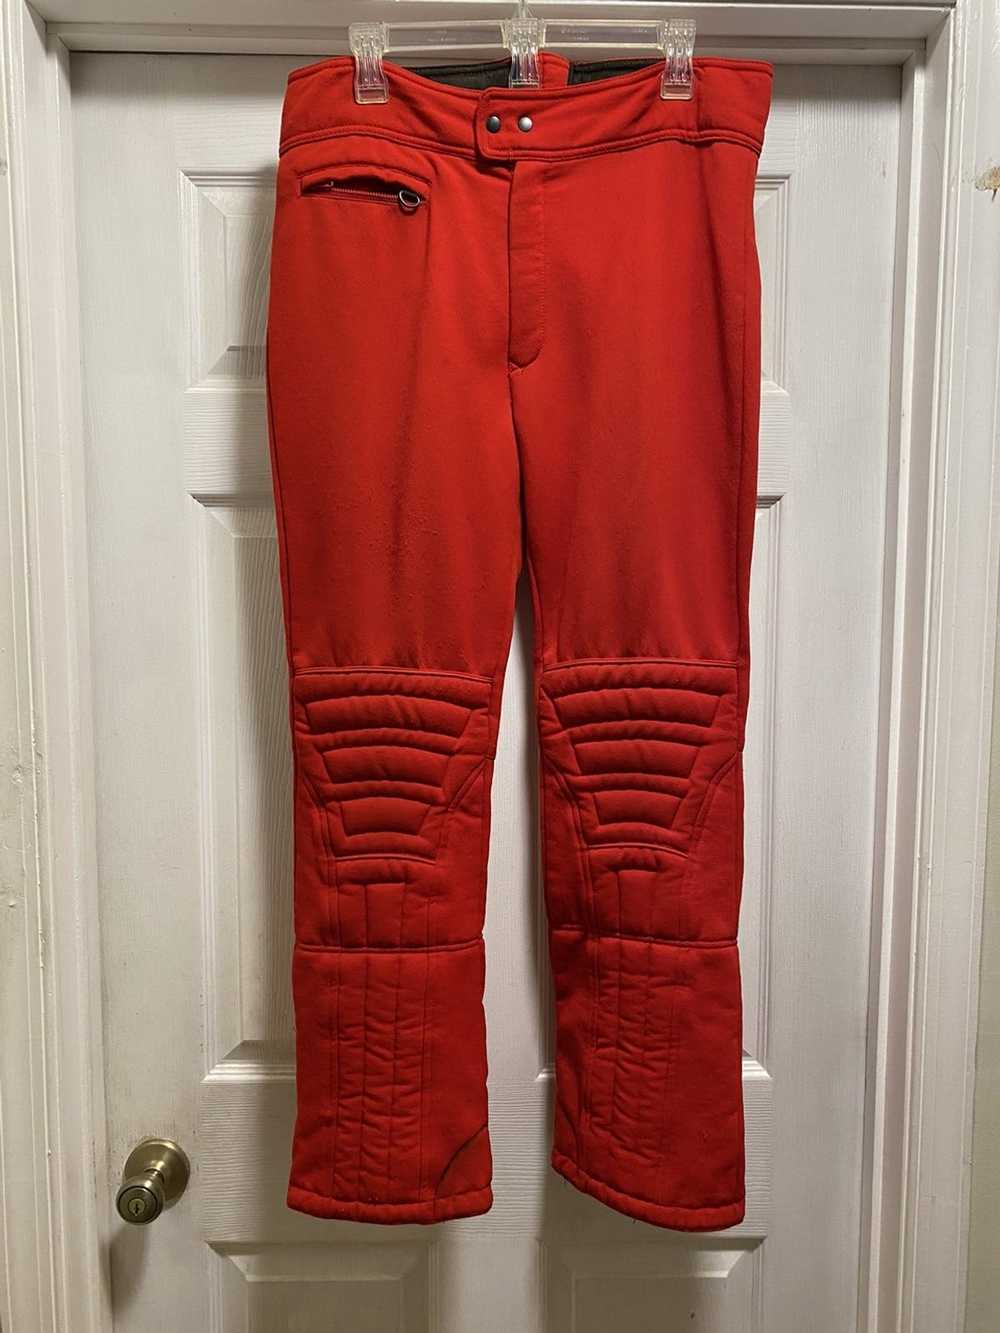 Japanese Brand × Vintage Vintage ski pants - image 1